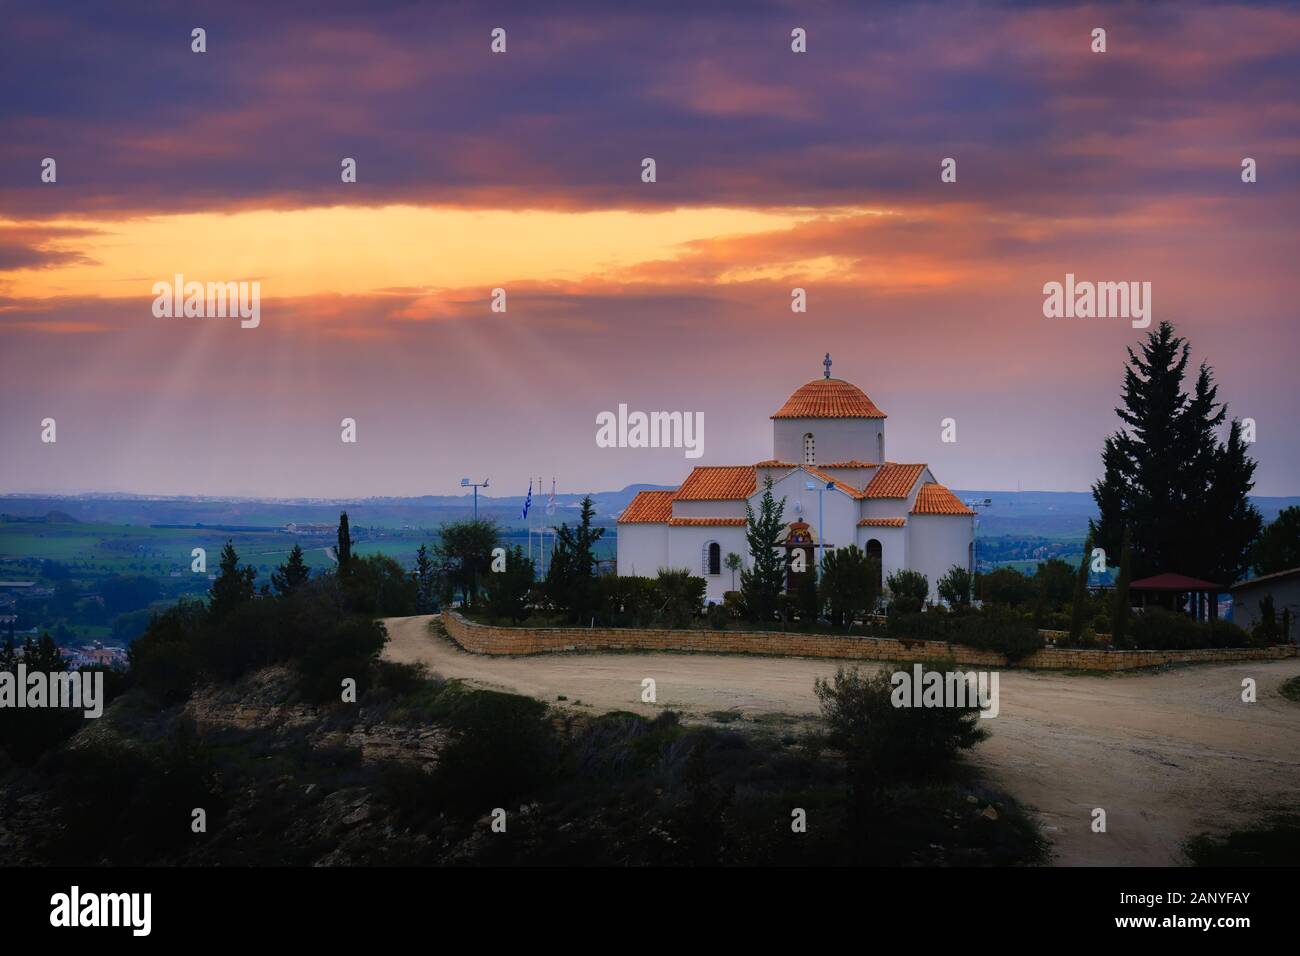 Église orthodoxe Panagia Tsampika au sommet d'une colline dans le district de Nicosie, Chypre au coucher du soleil avec des rayons lumineux Banque D'Images